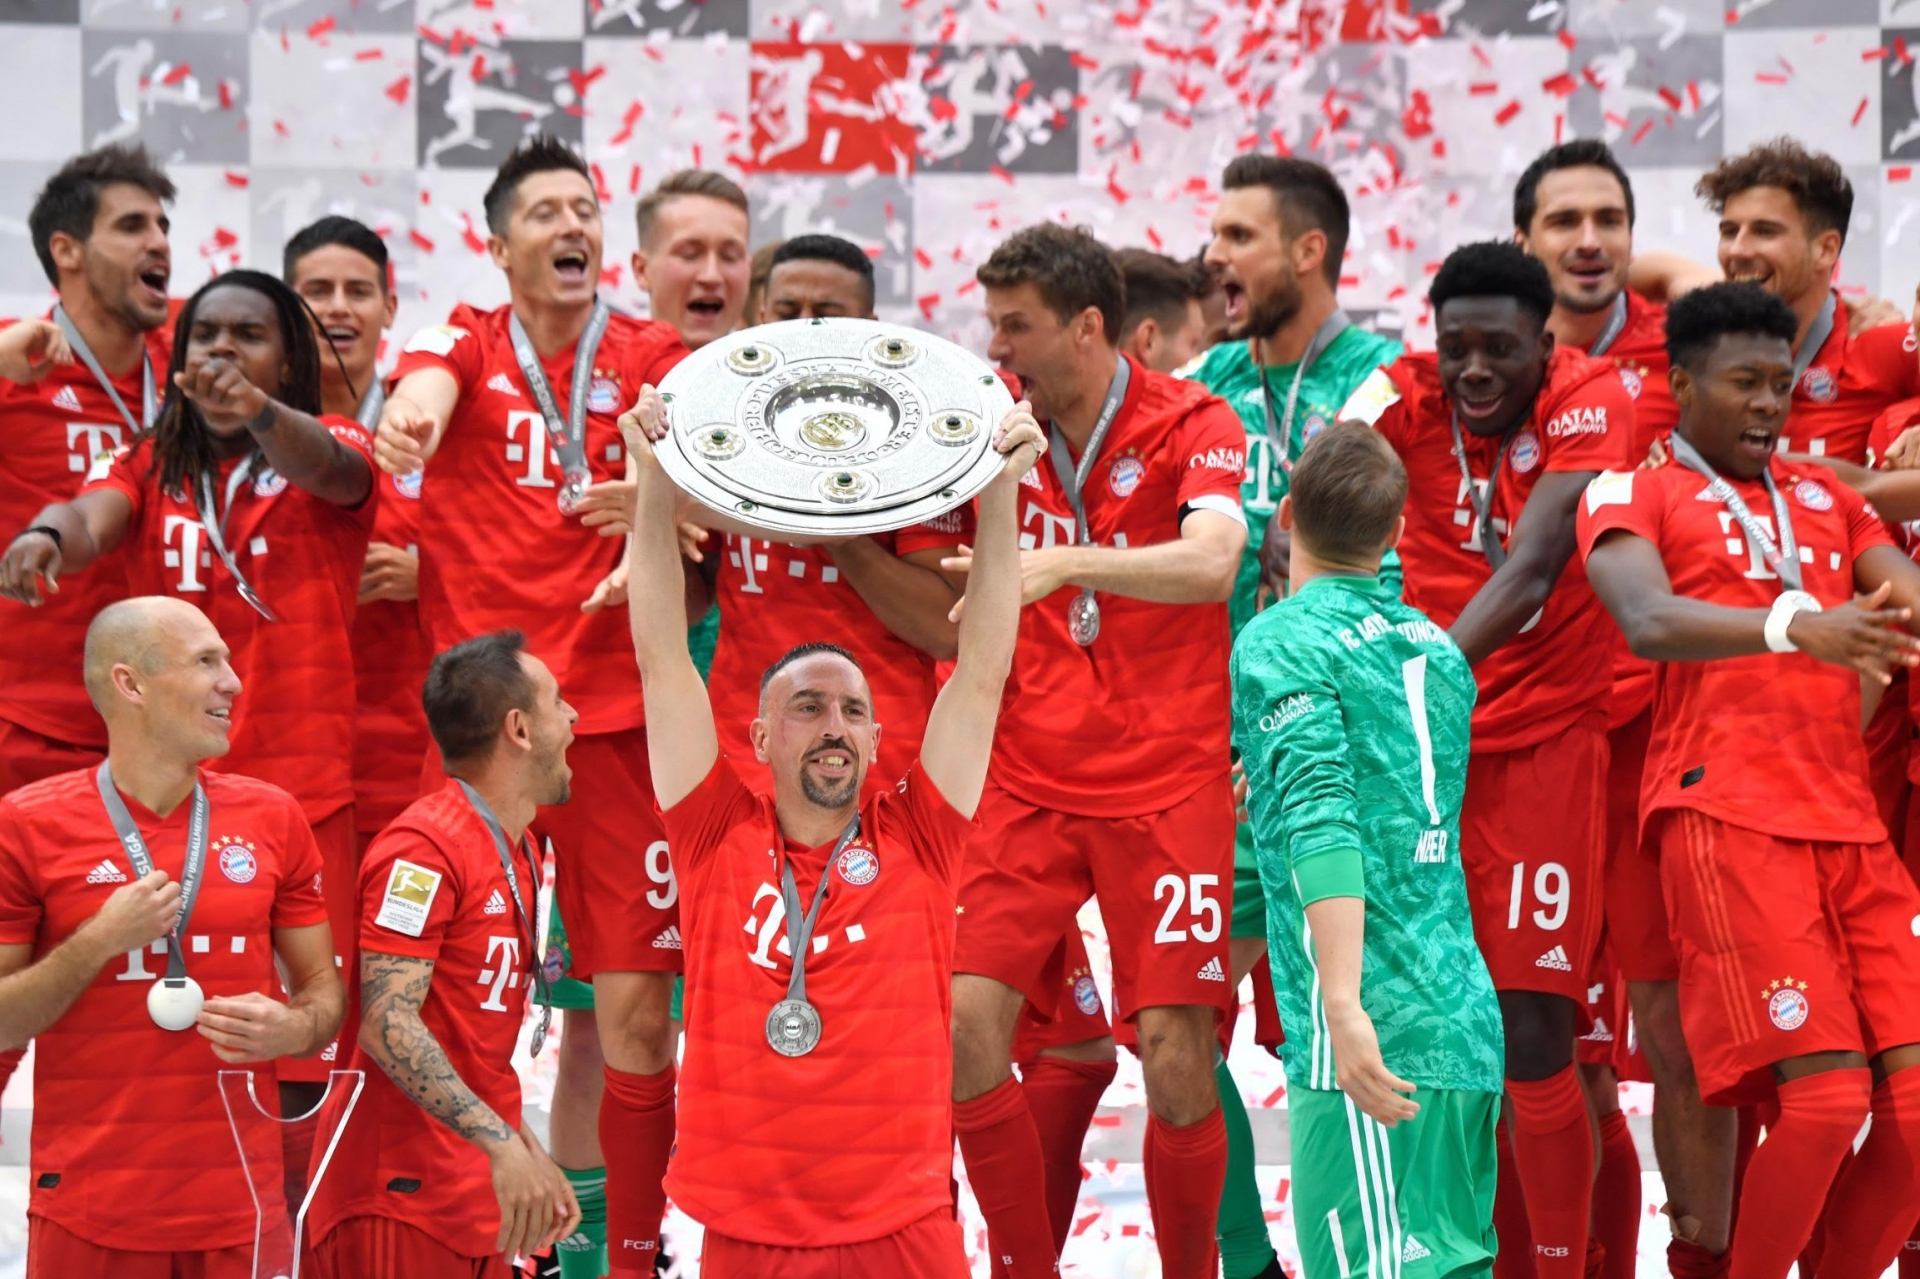 Câu chuyện về kỷ lục 11 năm vô địch Bundesliga của Bayern Munich 455004